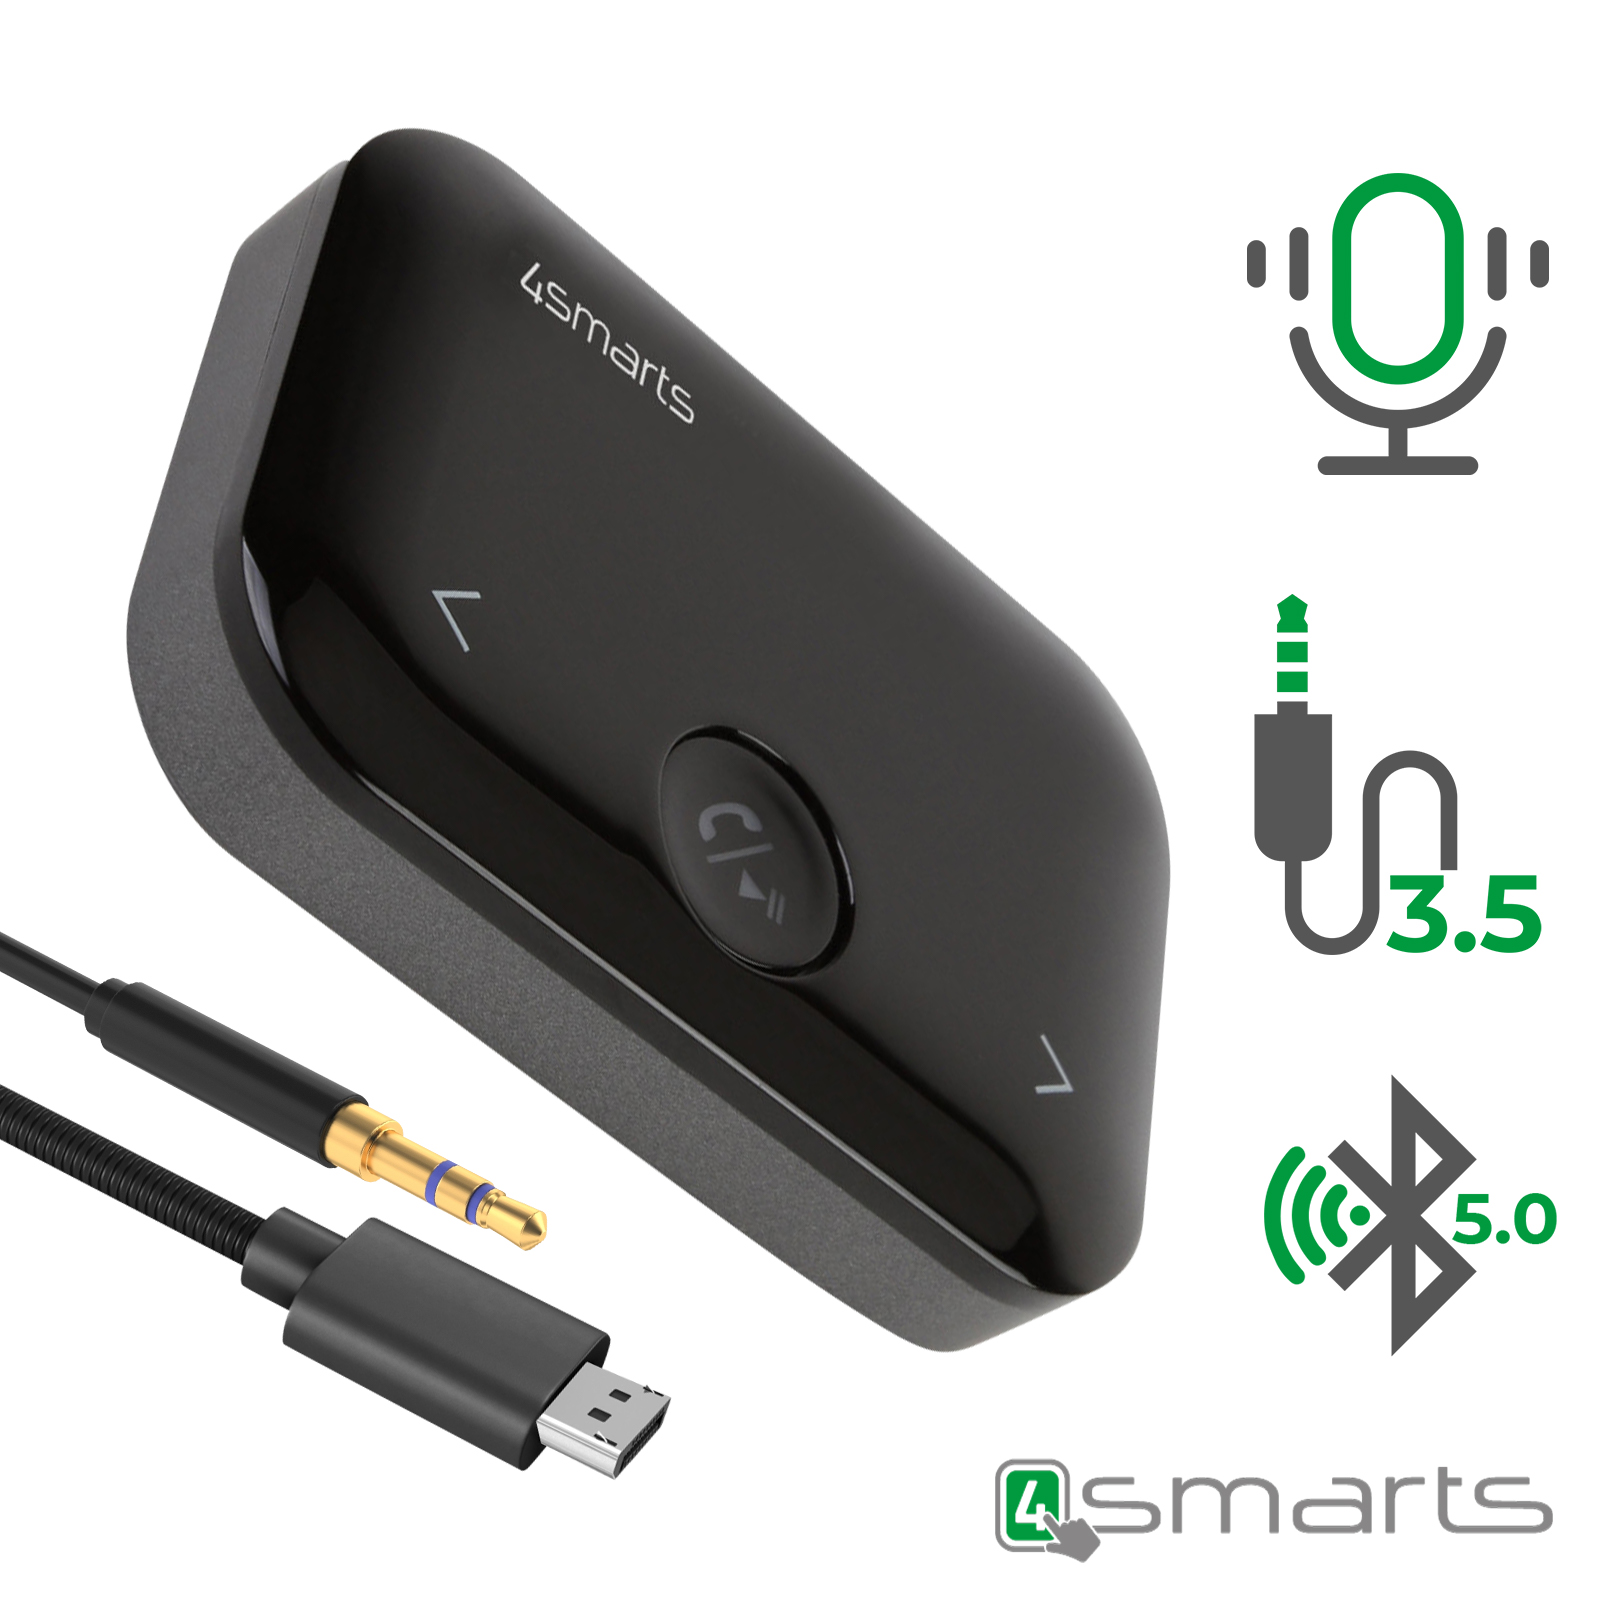 Récepteur audio Bluetooth 4.1 avec sortie audio 3,5 mm - Fonction spéciale  NFC - Plage de transmission 10M - Interrupteur marche / arrêt - Indicateur  LED - Noir - Orico